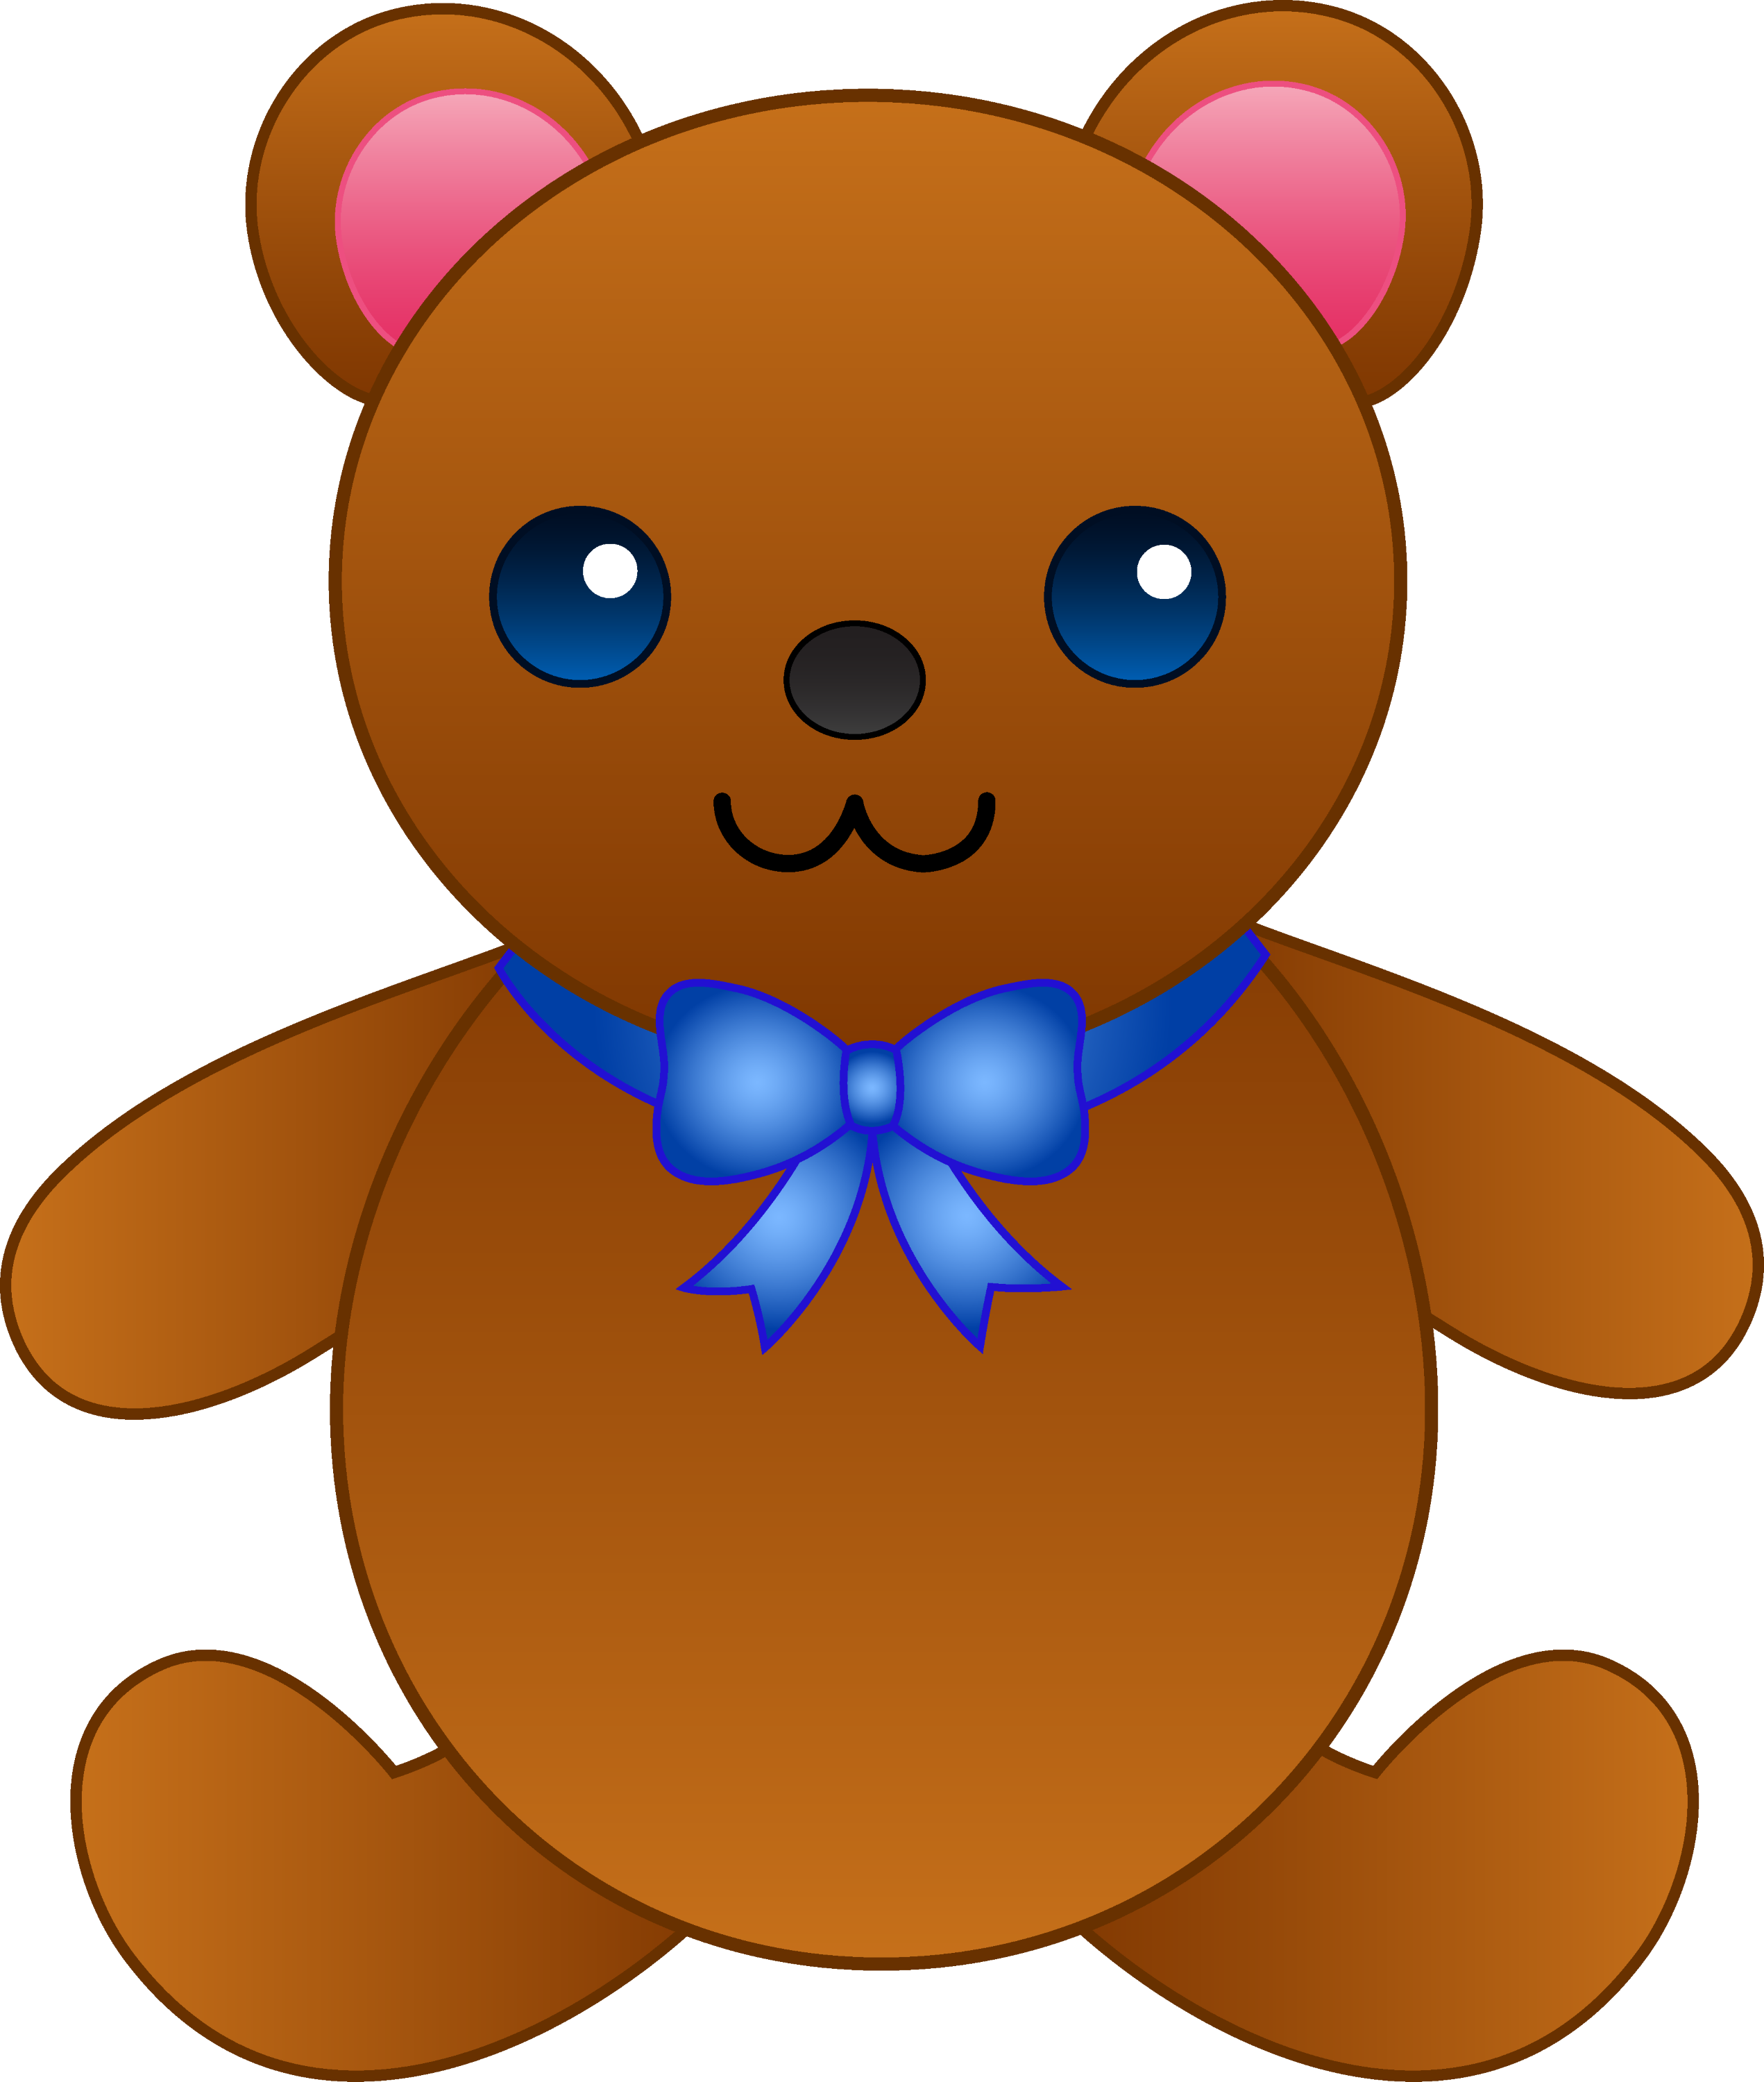 cute teddy bear clip art free - photo #38